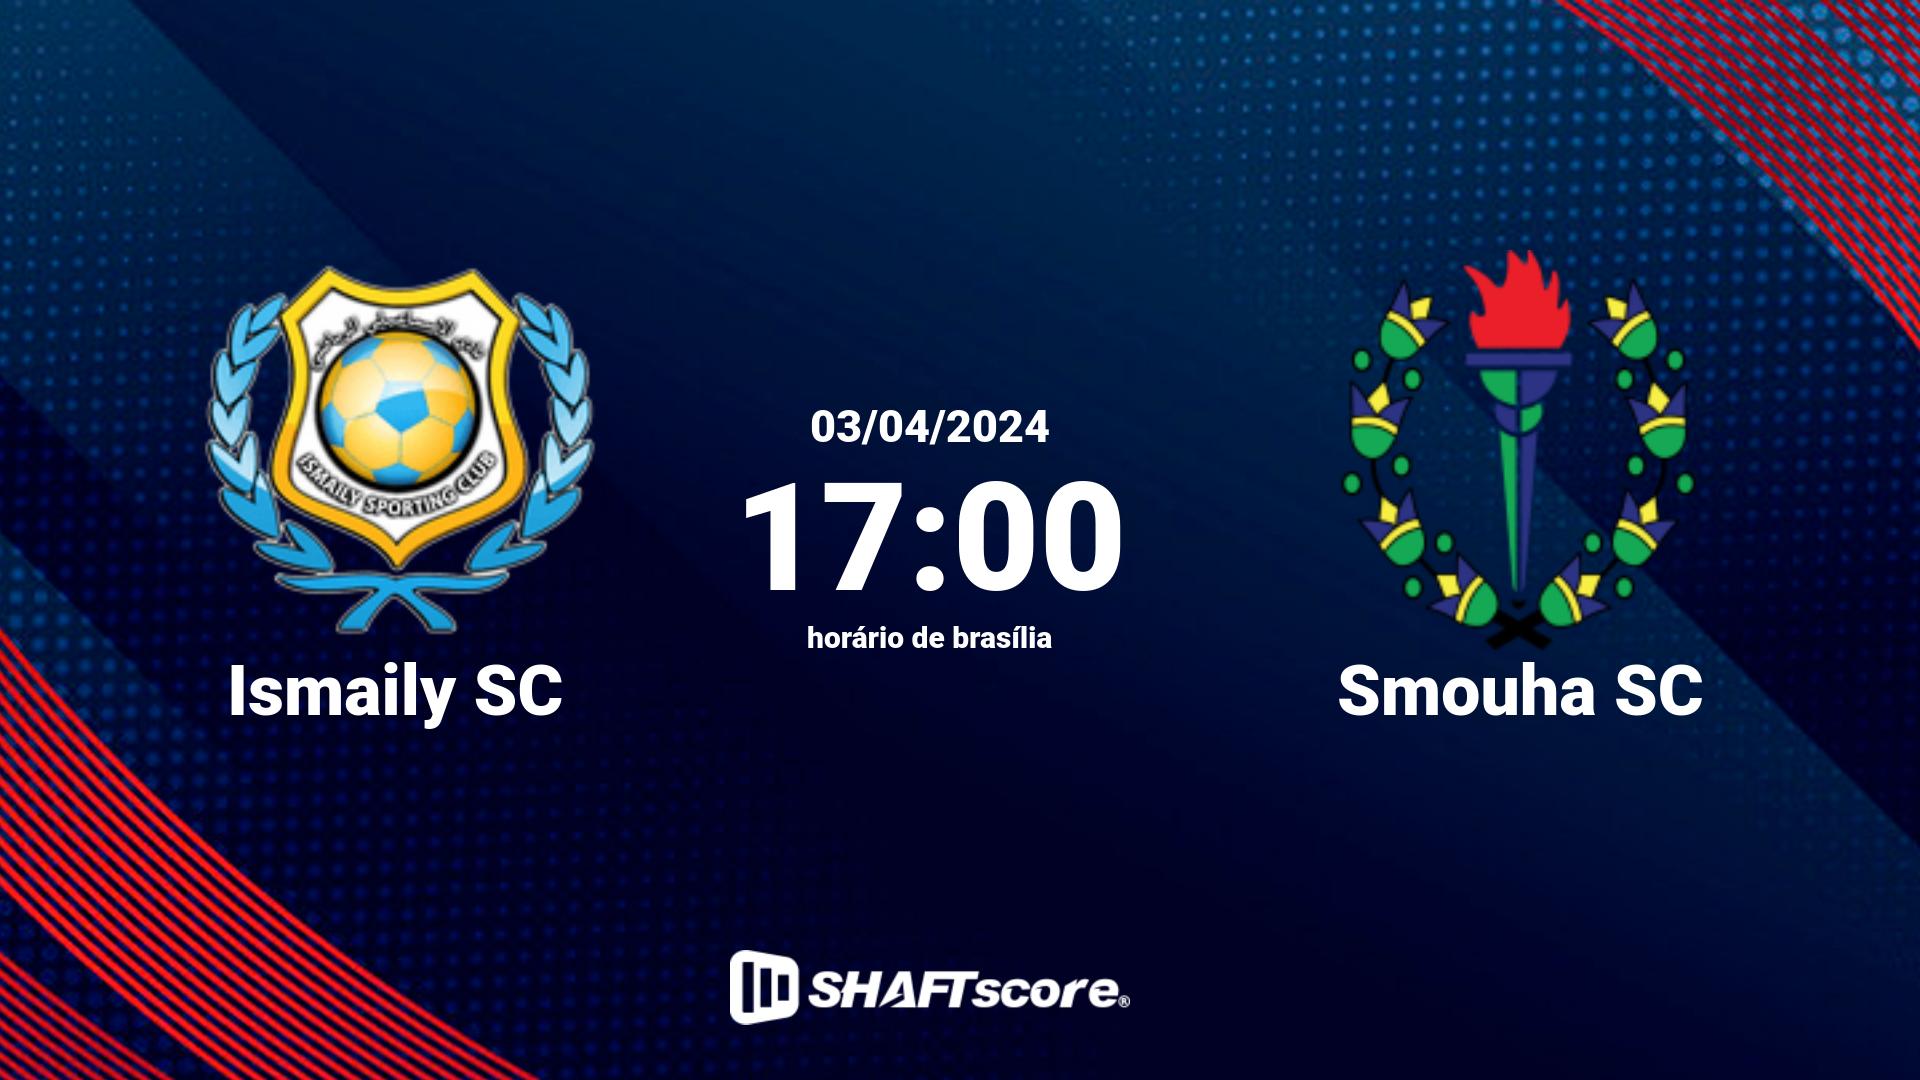 Estatísticas do jogo Ismaily SC vs Smouha SC 03.04 17:00